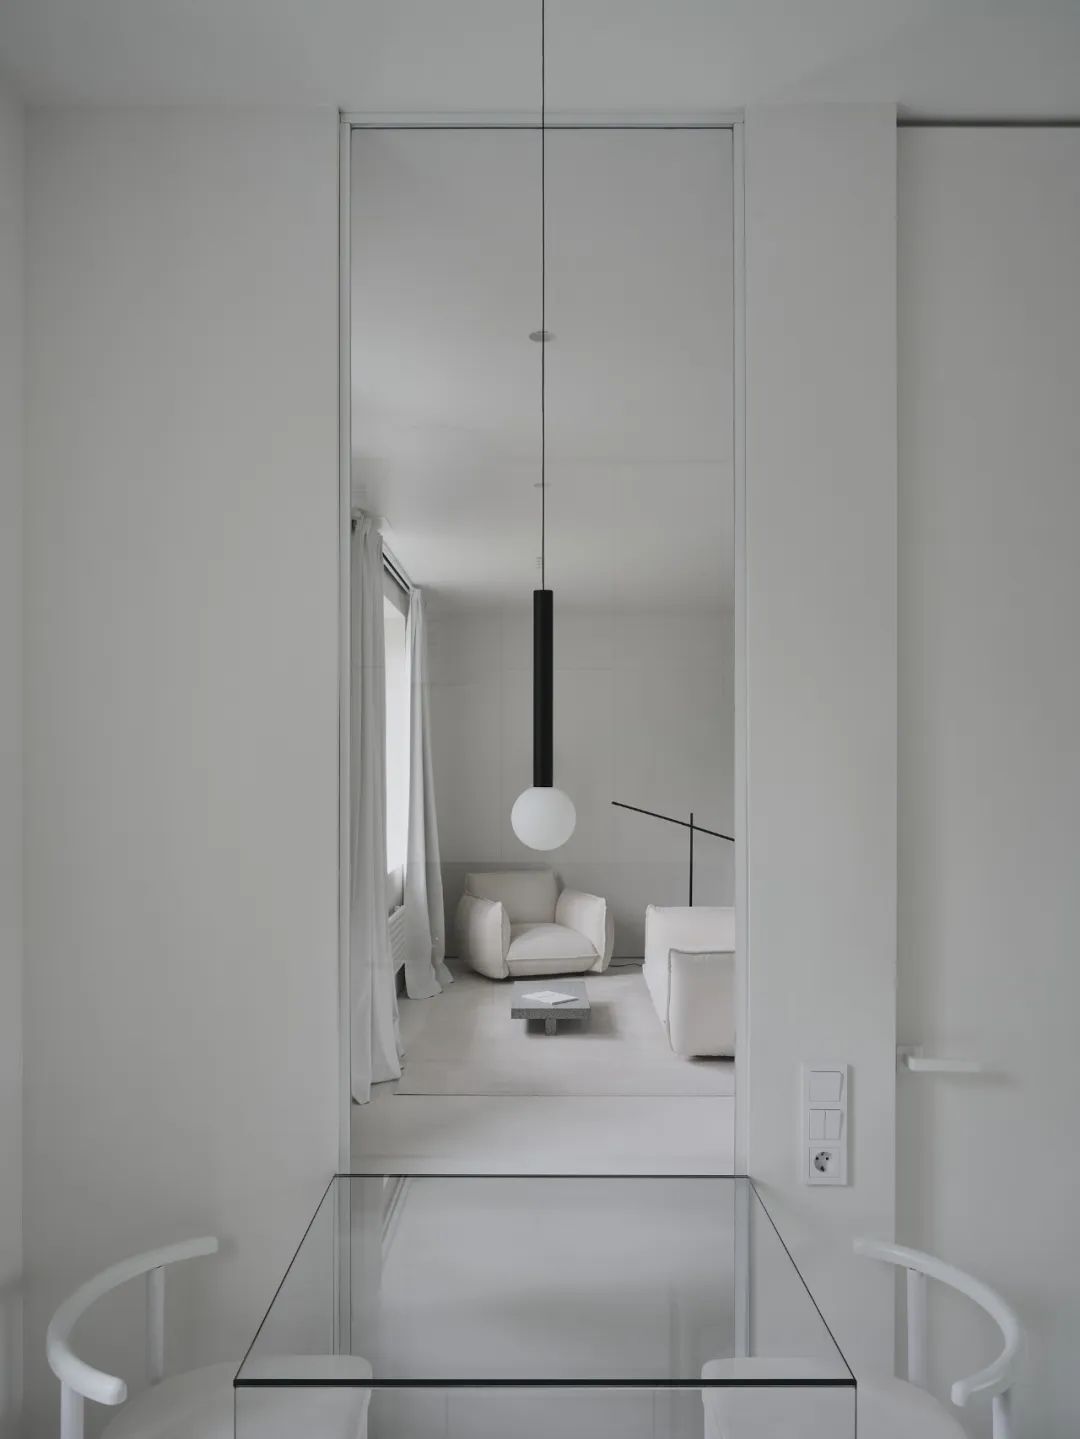 A77,公寓設計,公寓設計案例,55㎡,極簡風格,小公寓,極簡主義,白色極簡